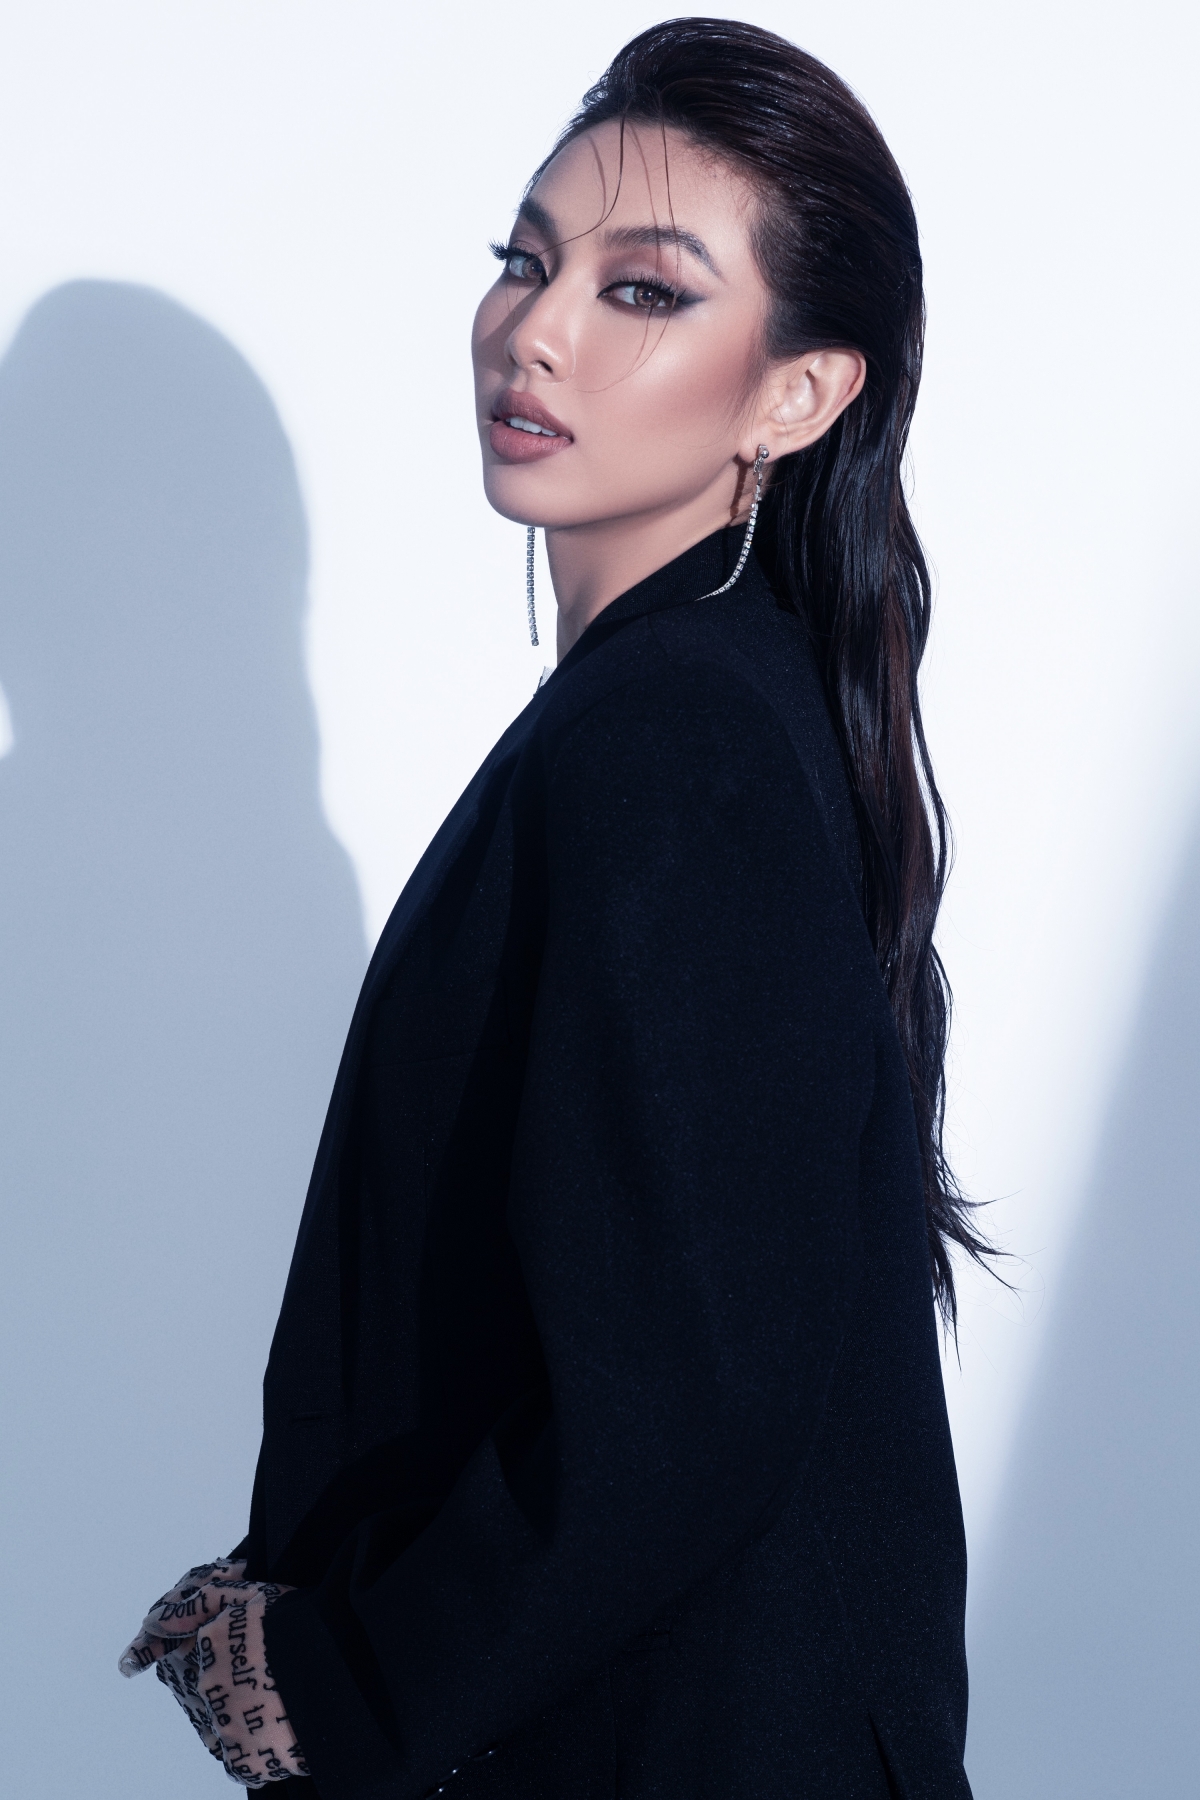 Hoa hậu Thùy Tiên “biến hóa” đa sắc thái trong bộ ảnh mới khiến fan xôn xao - Ảnh 6.